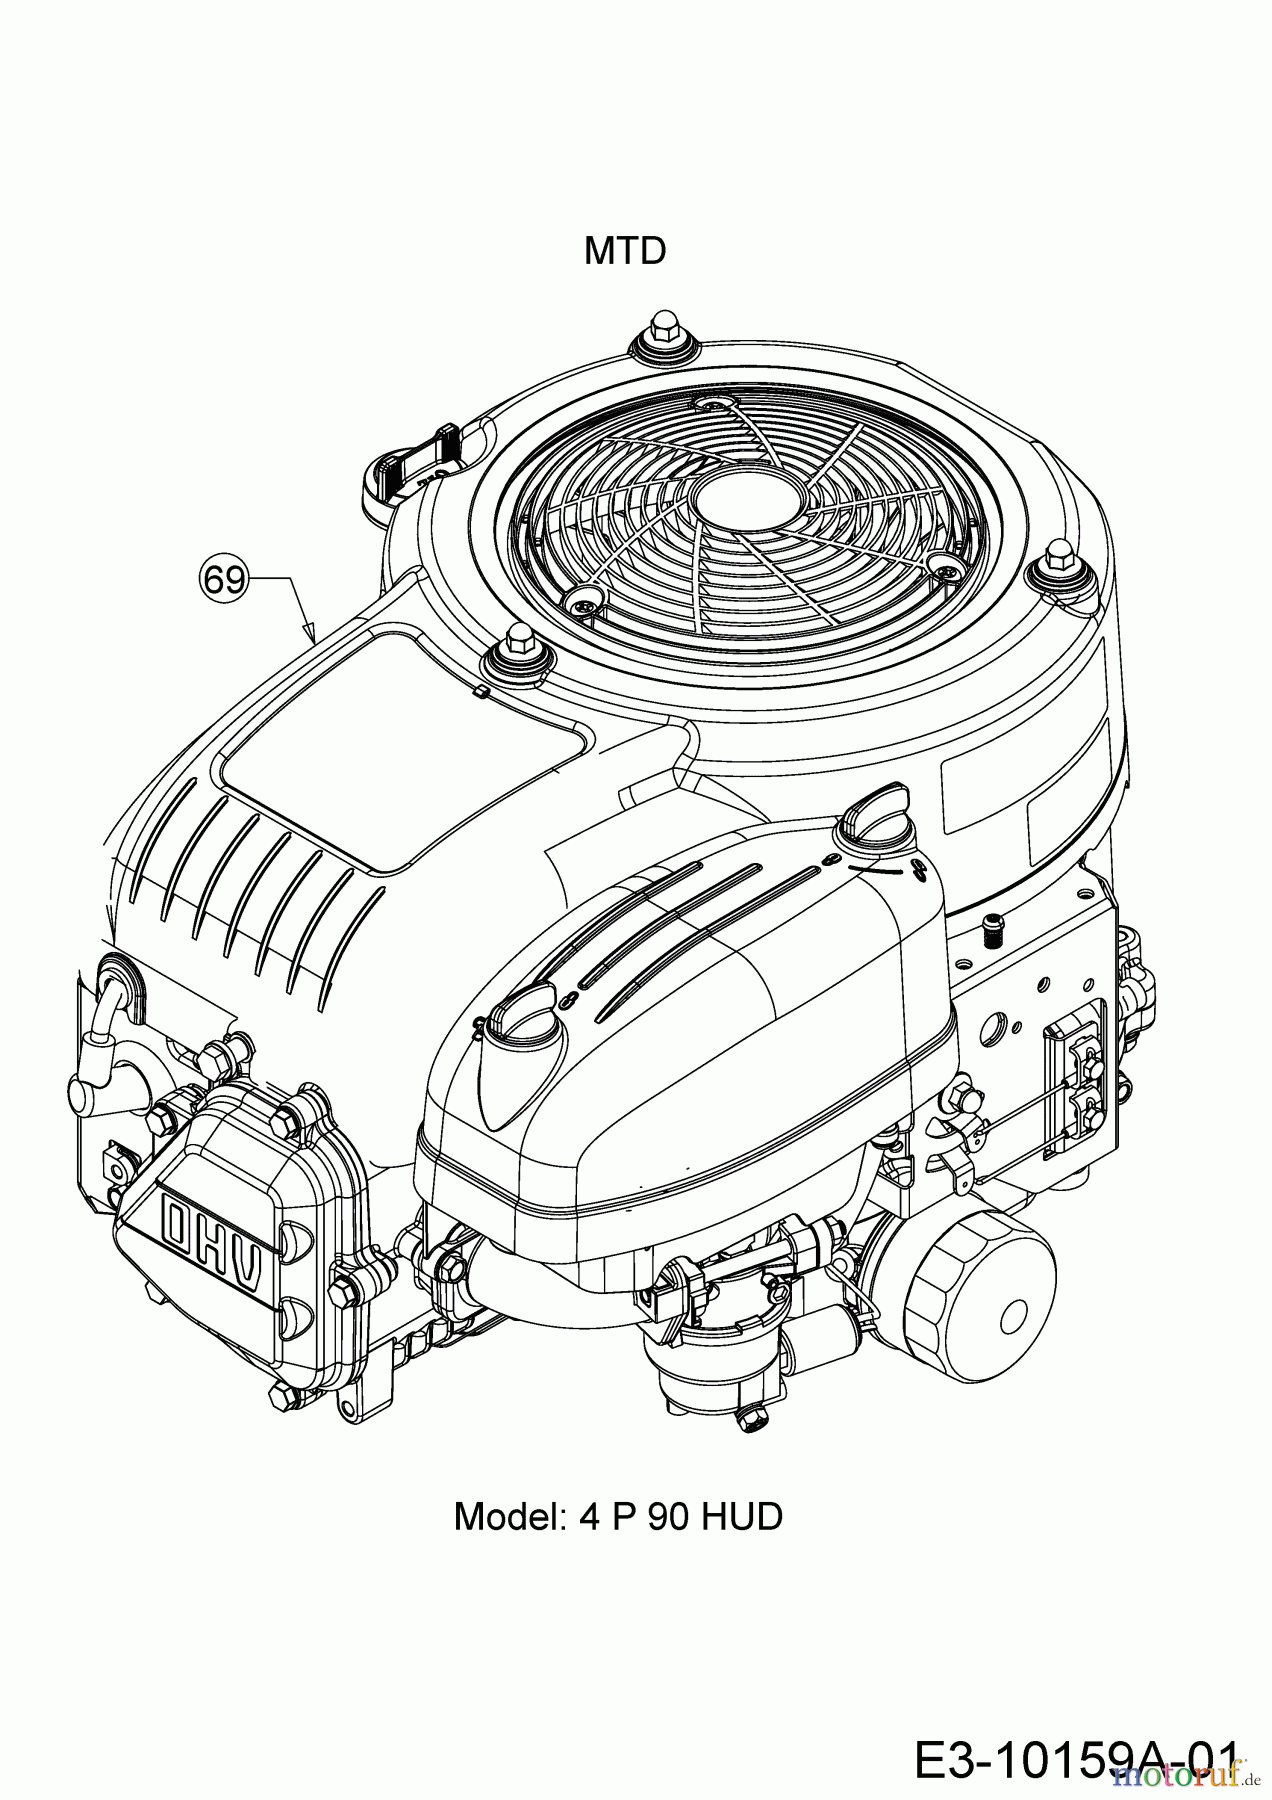  Helington Rasentraktoren H 96 T 13H276KF686  (2017) Motor MTD